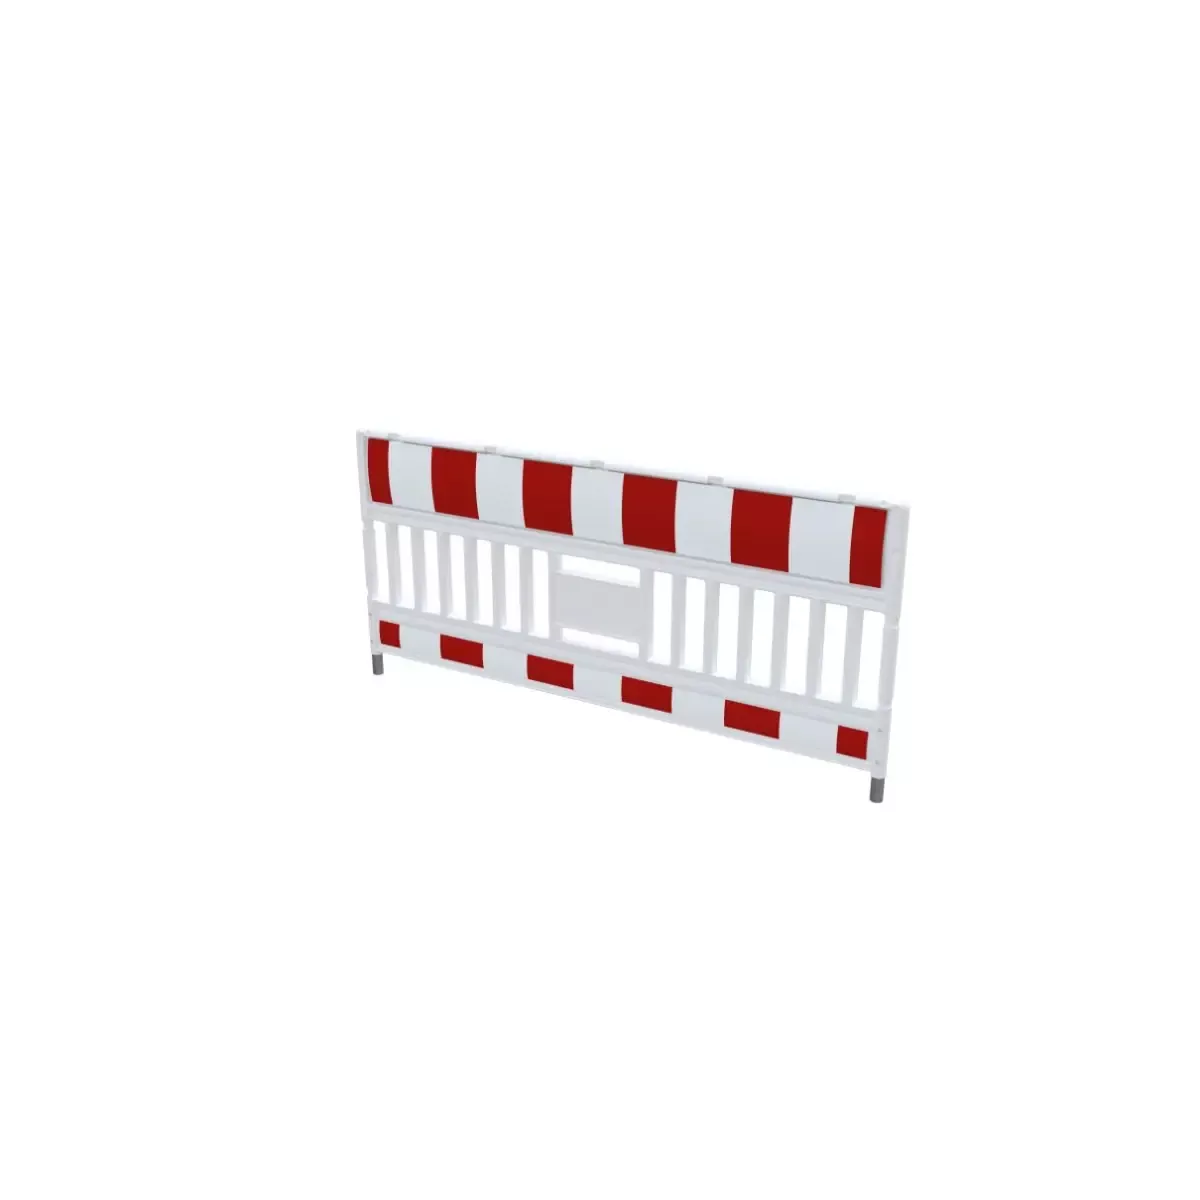 EURO3 Absperrschrankengitter RA1, rot-weiß, vorgerichtet für auswechselbare Adapter Bild 3 von 6 für Baustellenabsicherung